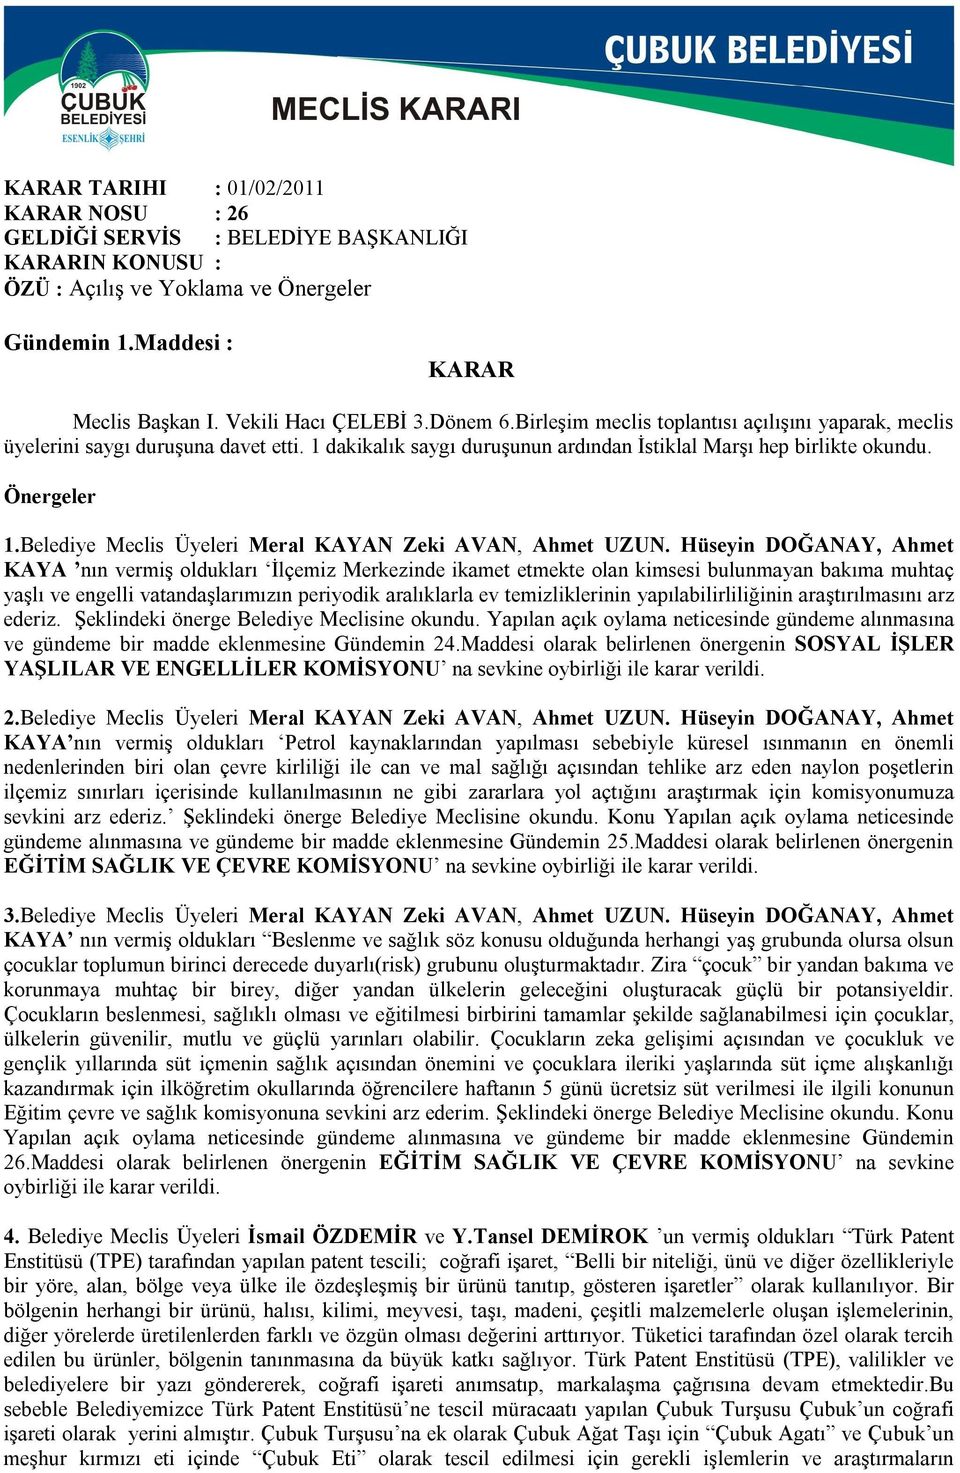 Belediye Meclis Üyeleri Meral KAYAN Zeki AVAN, Ahmet UZUN.